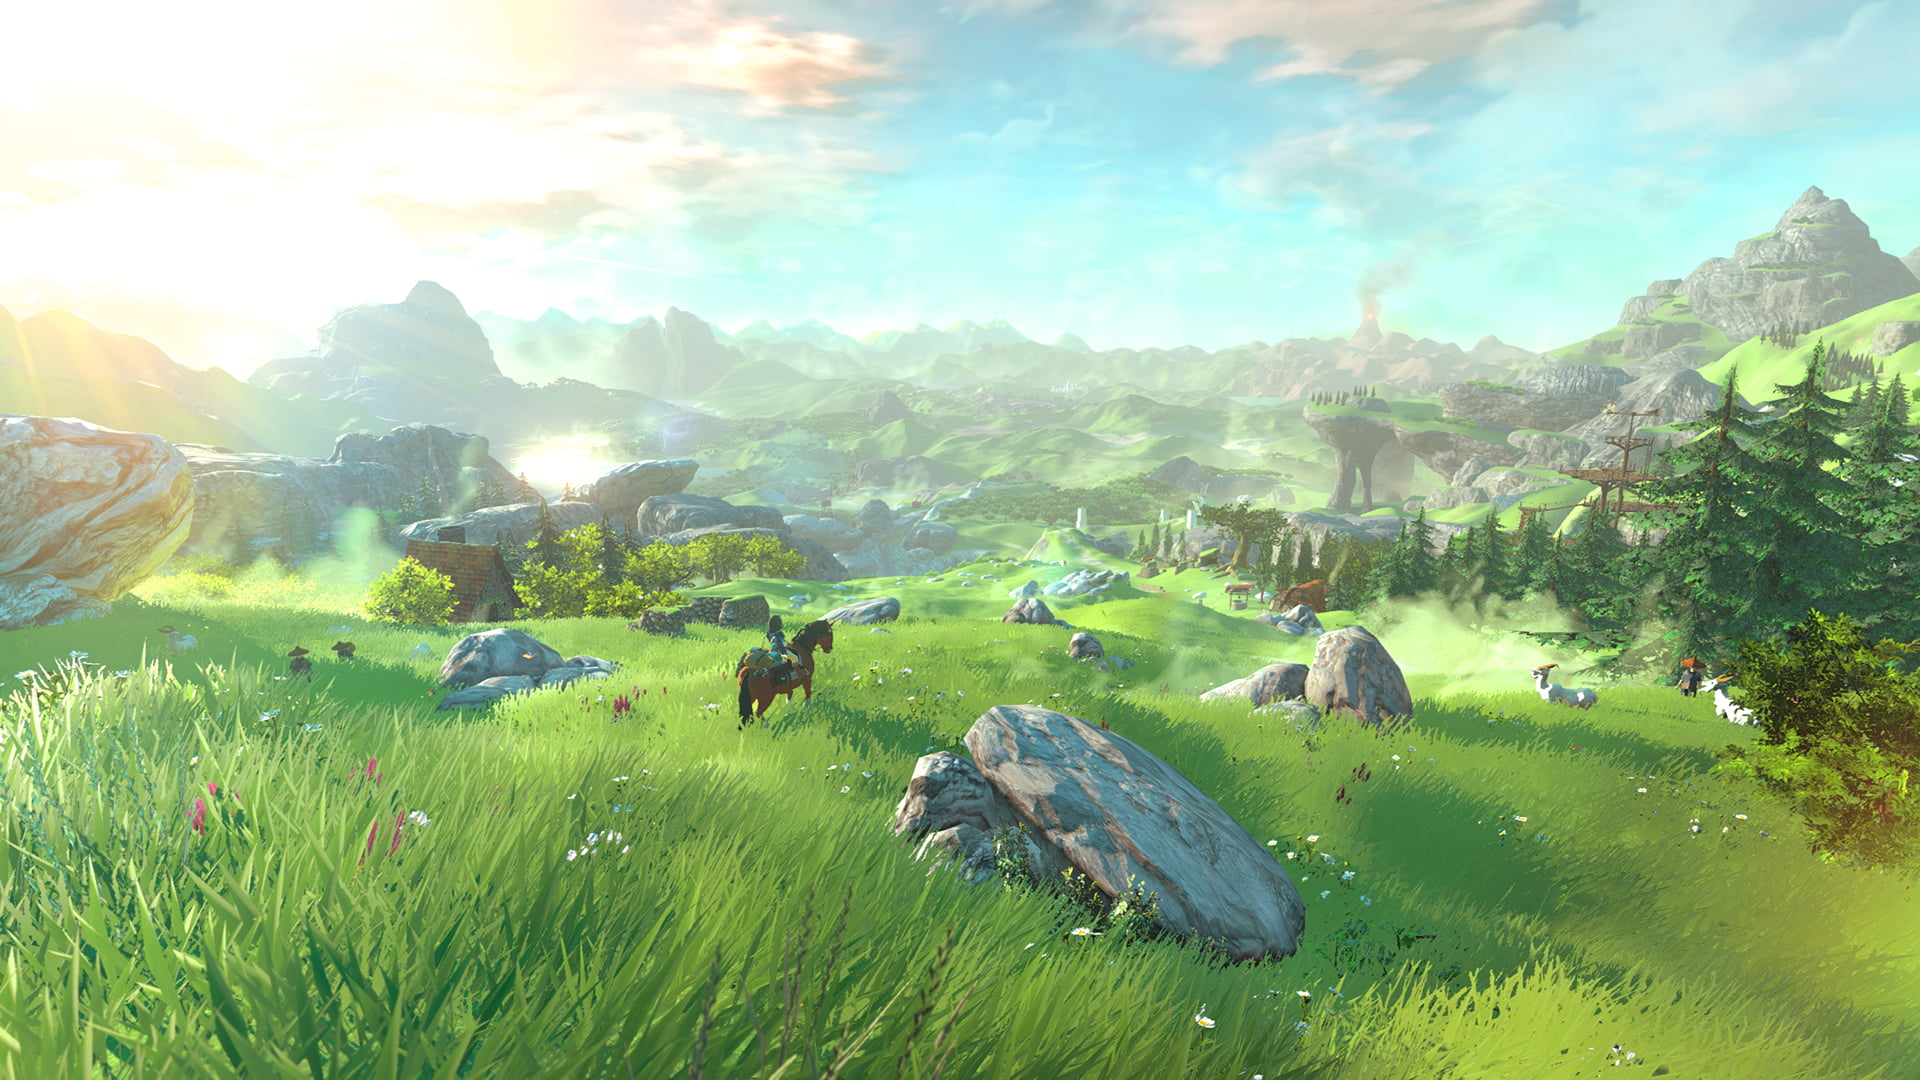 painting of landscape, Wii U, Link, The Legend of Zelda, nature